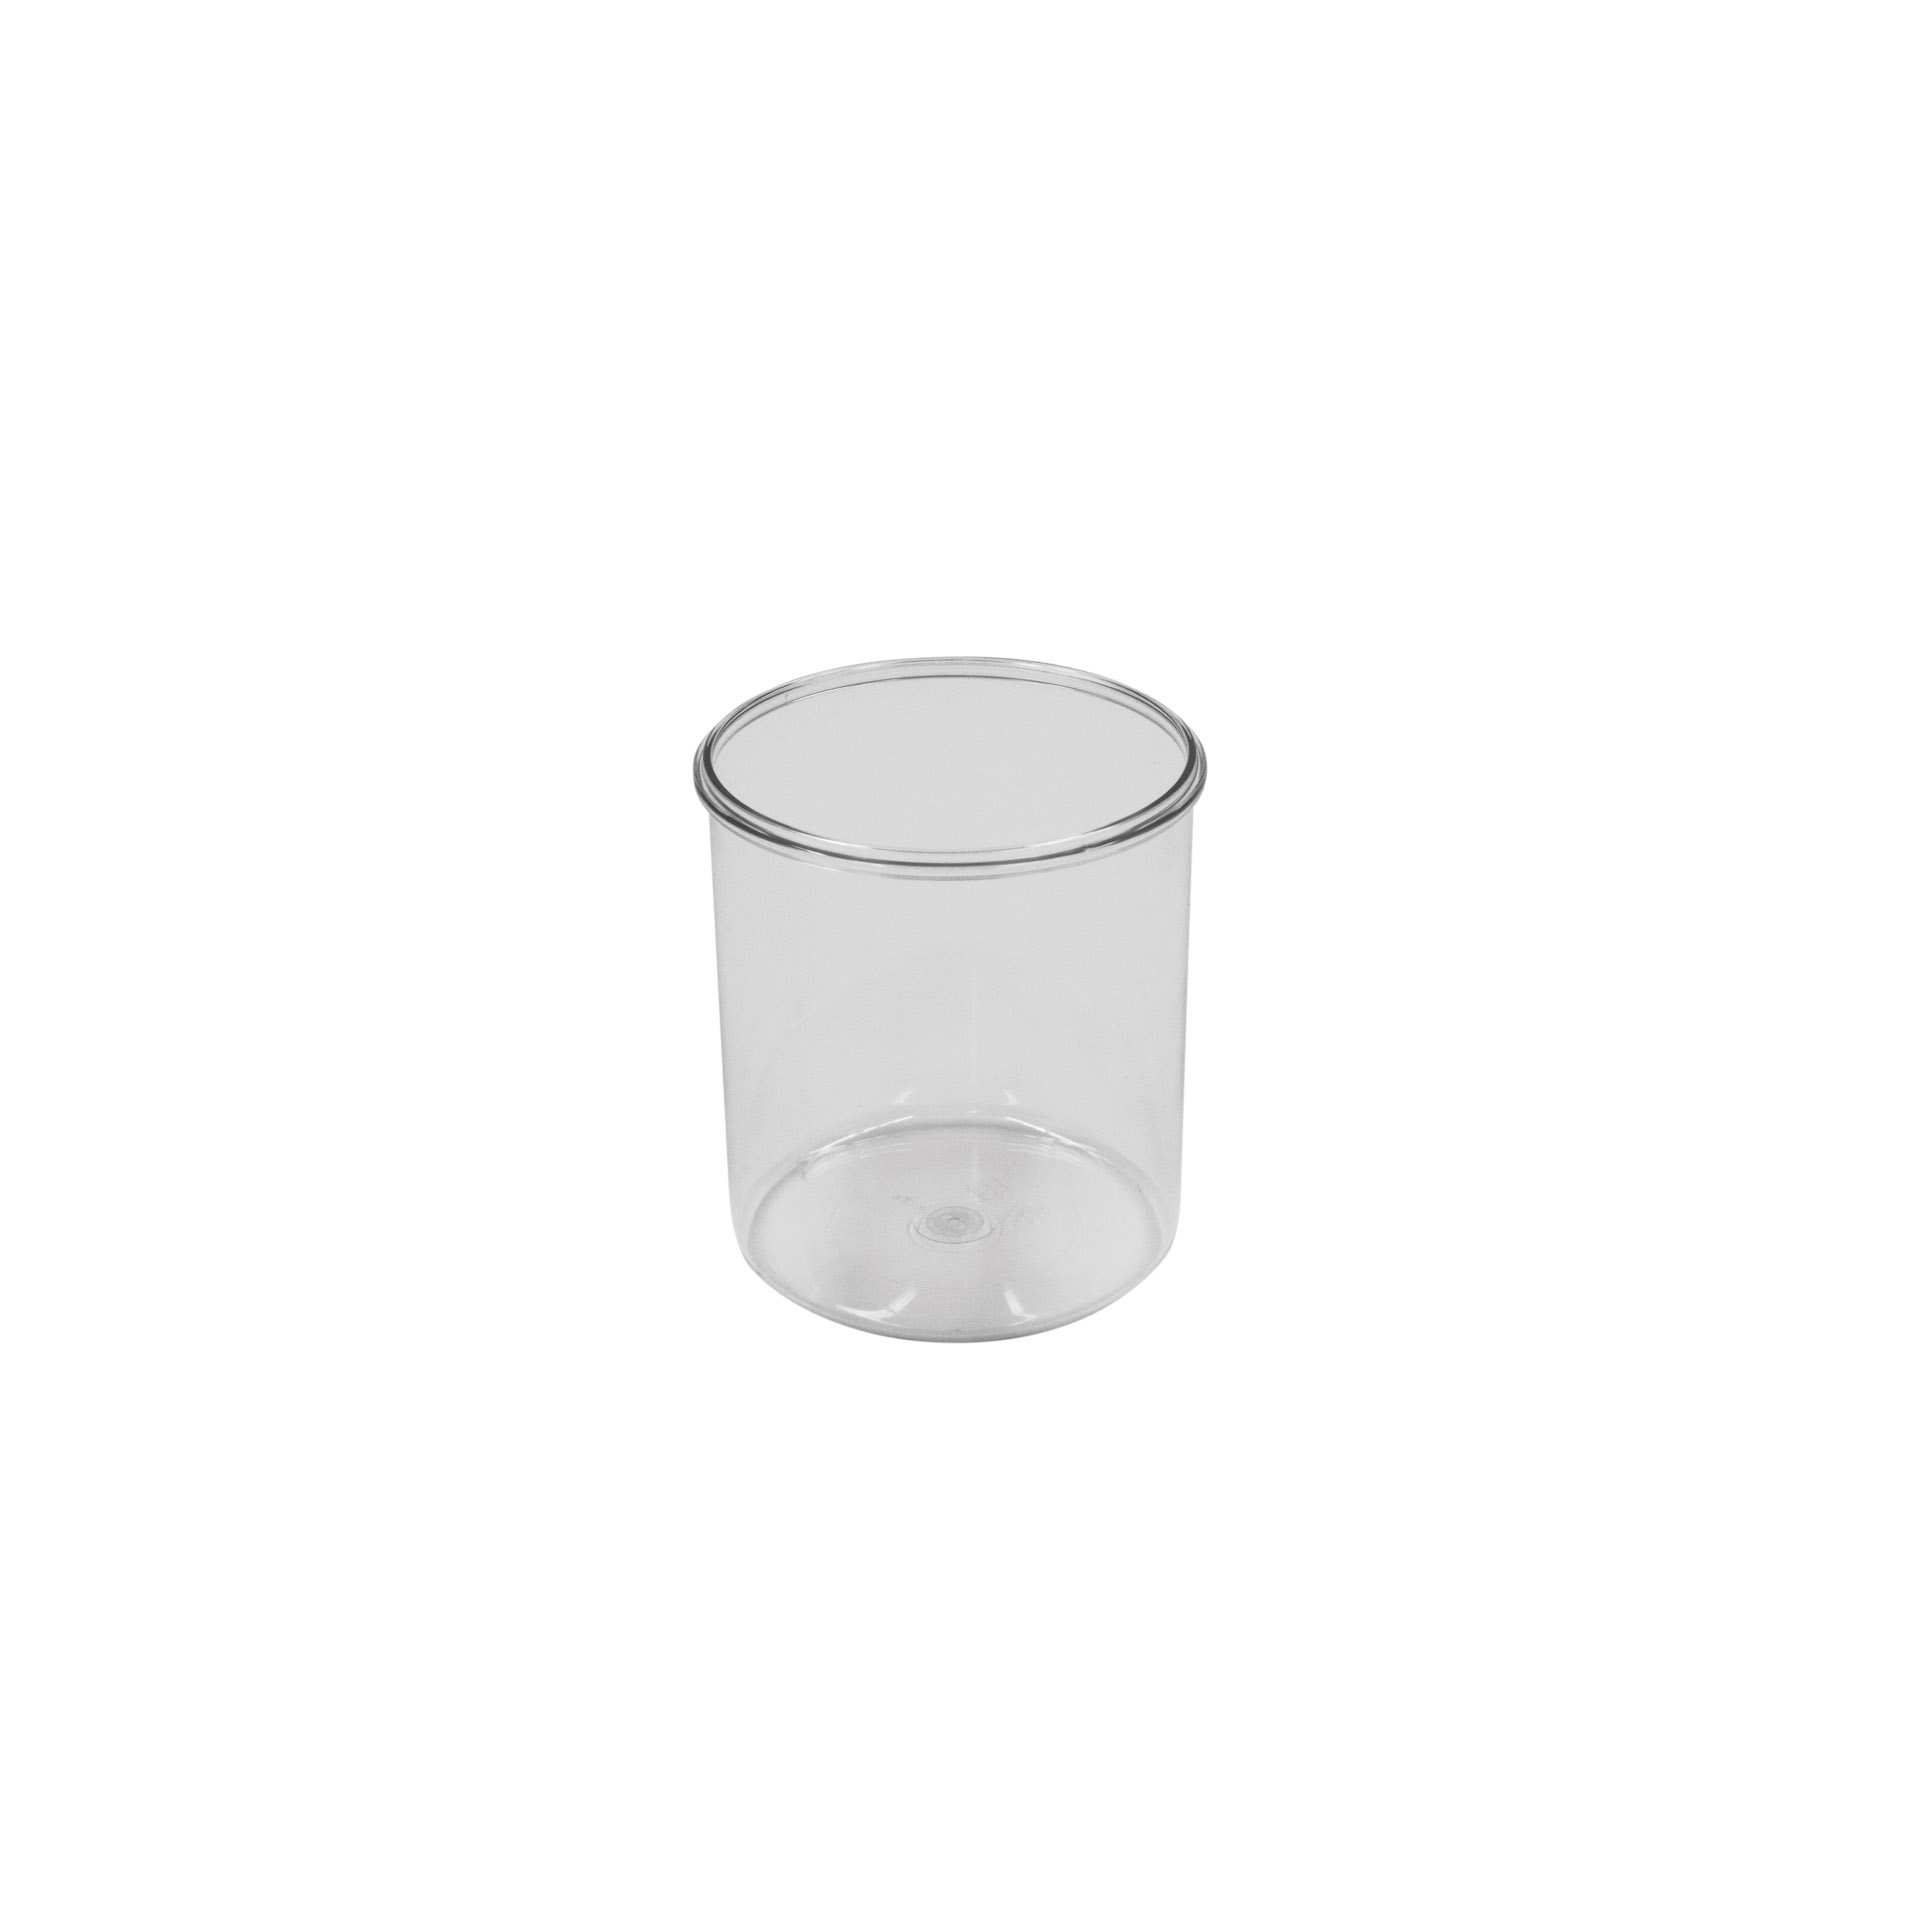 Vorratsdose - mit Deckel - transparent - rund - Höhe 14,0 cm - Ø 11,5 cm - Inhalt 1,0 l - Polystyrol - 152919-C